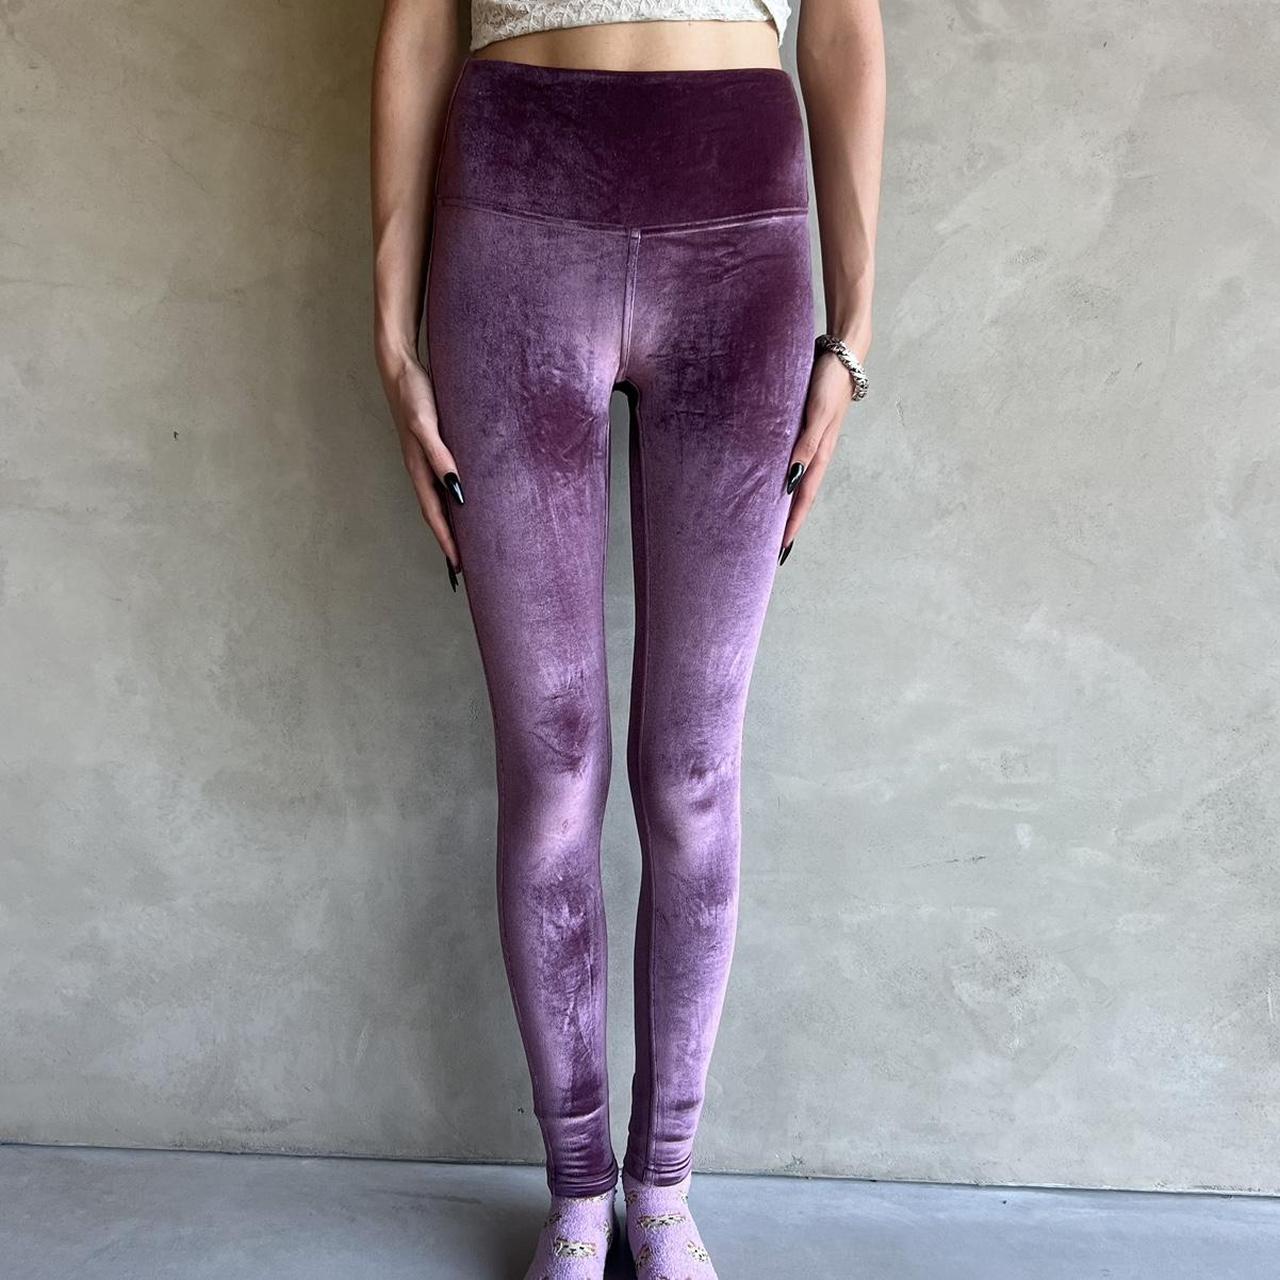 lululemon leggings 🧞‍♀️ these velvet leggings are sooo - Depop